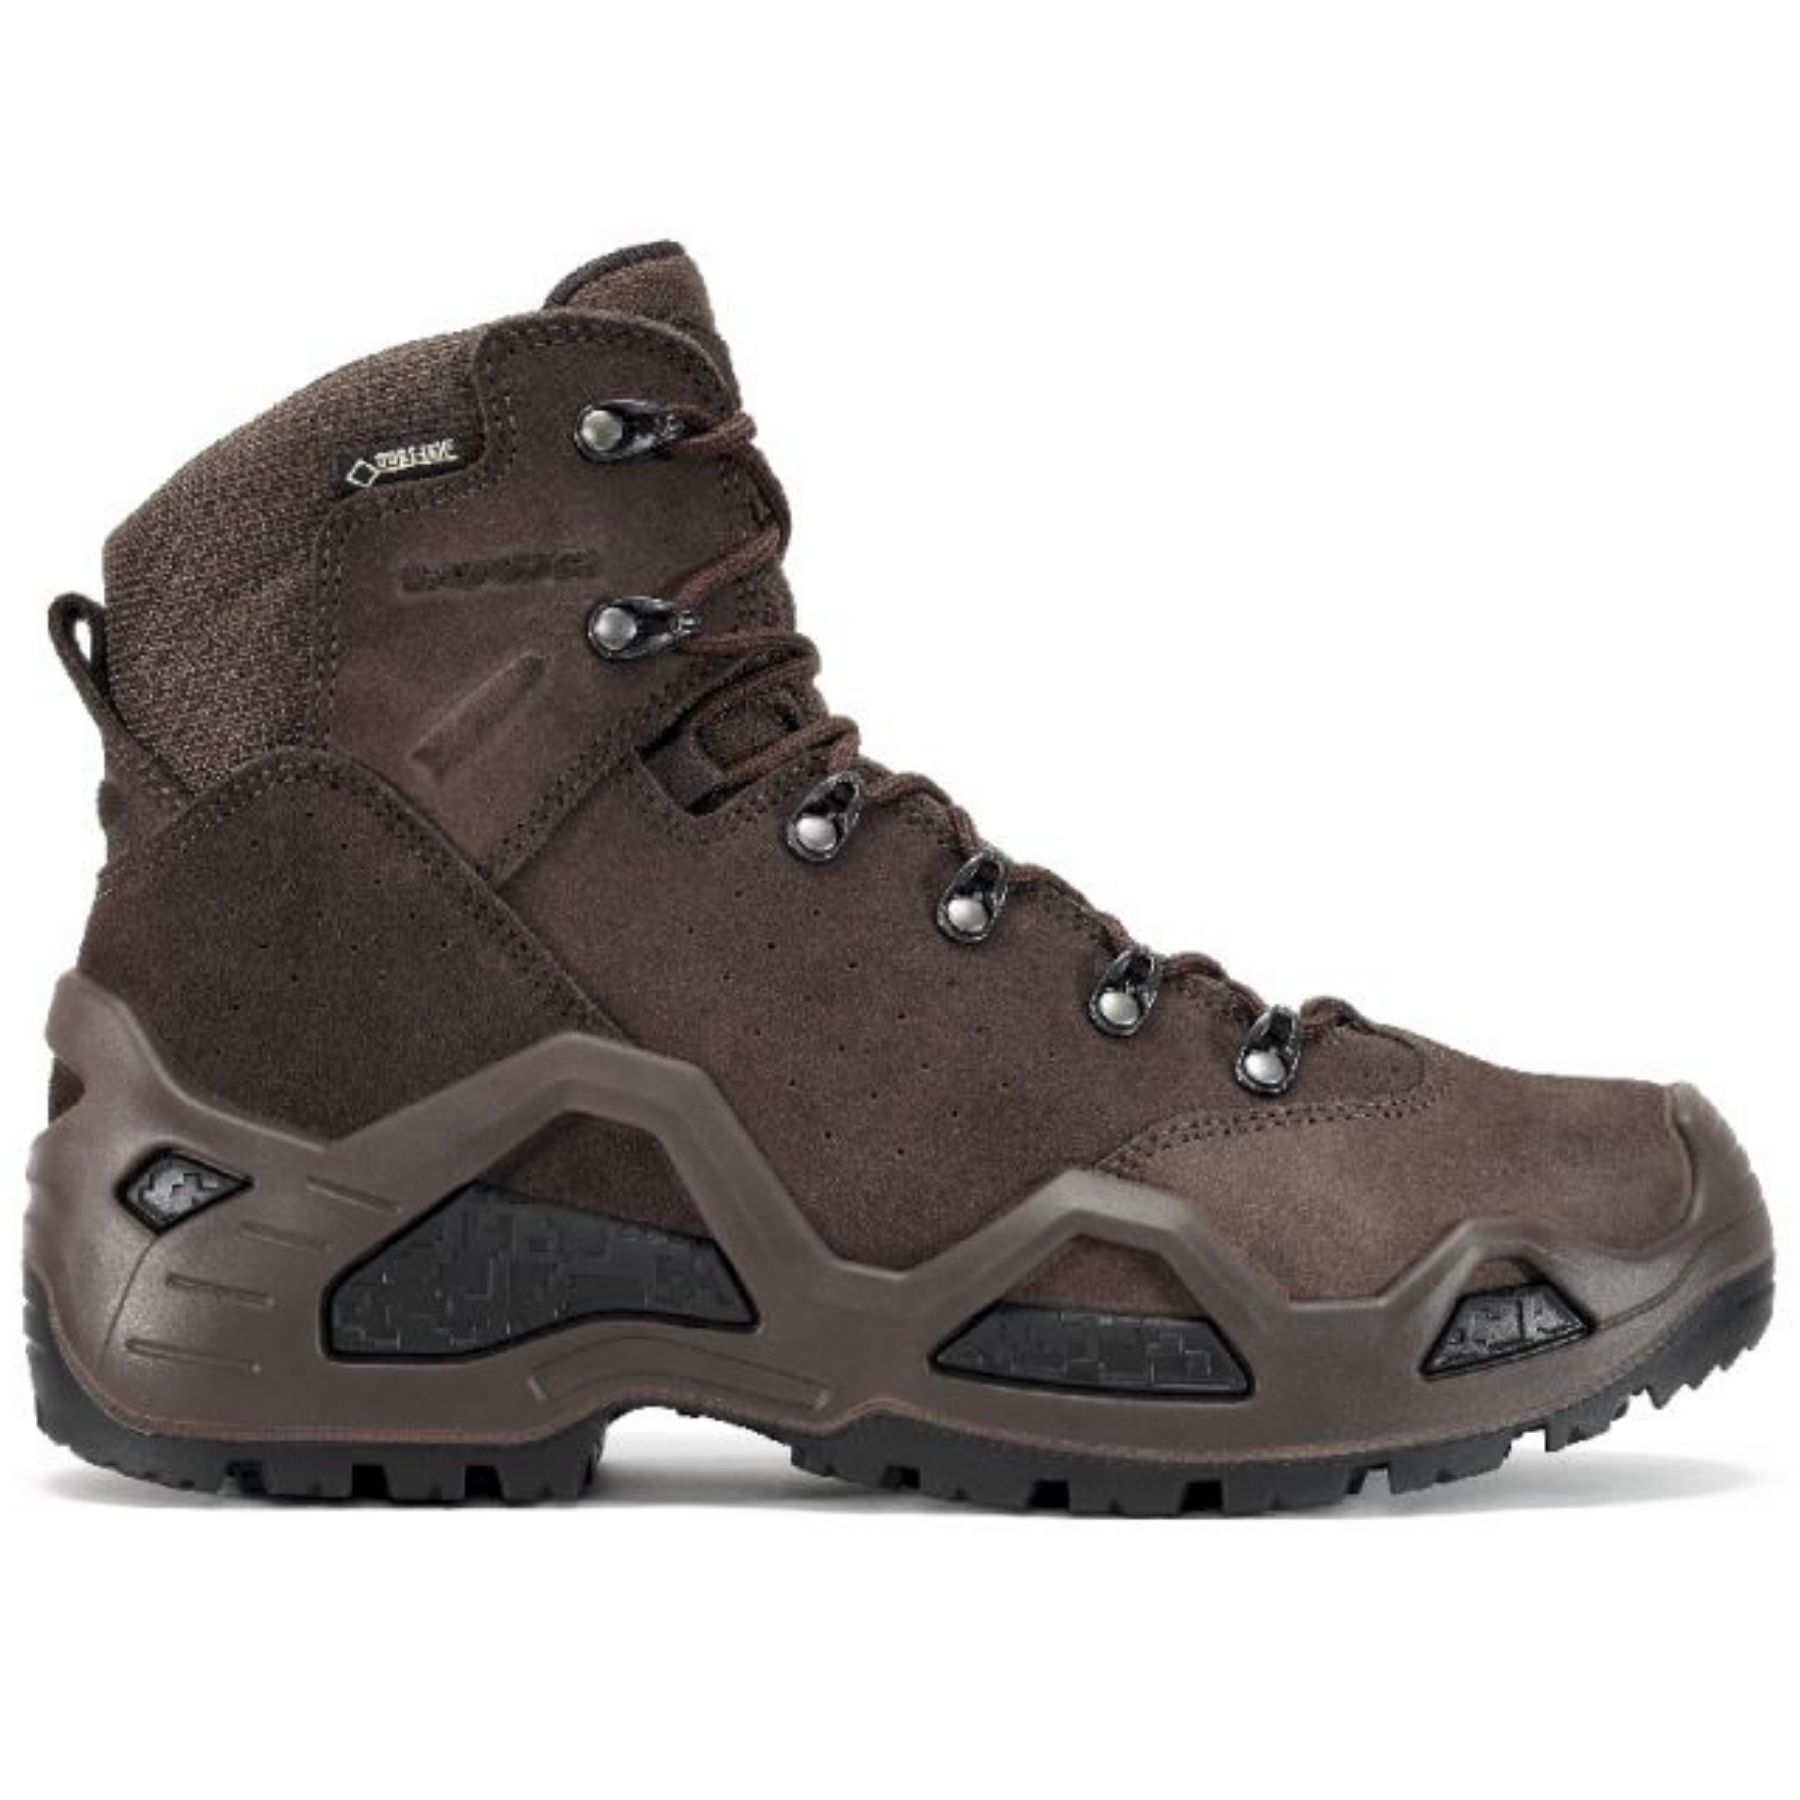 Lowa - Z-6S GTX® - Walking Boots - Men's